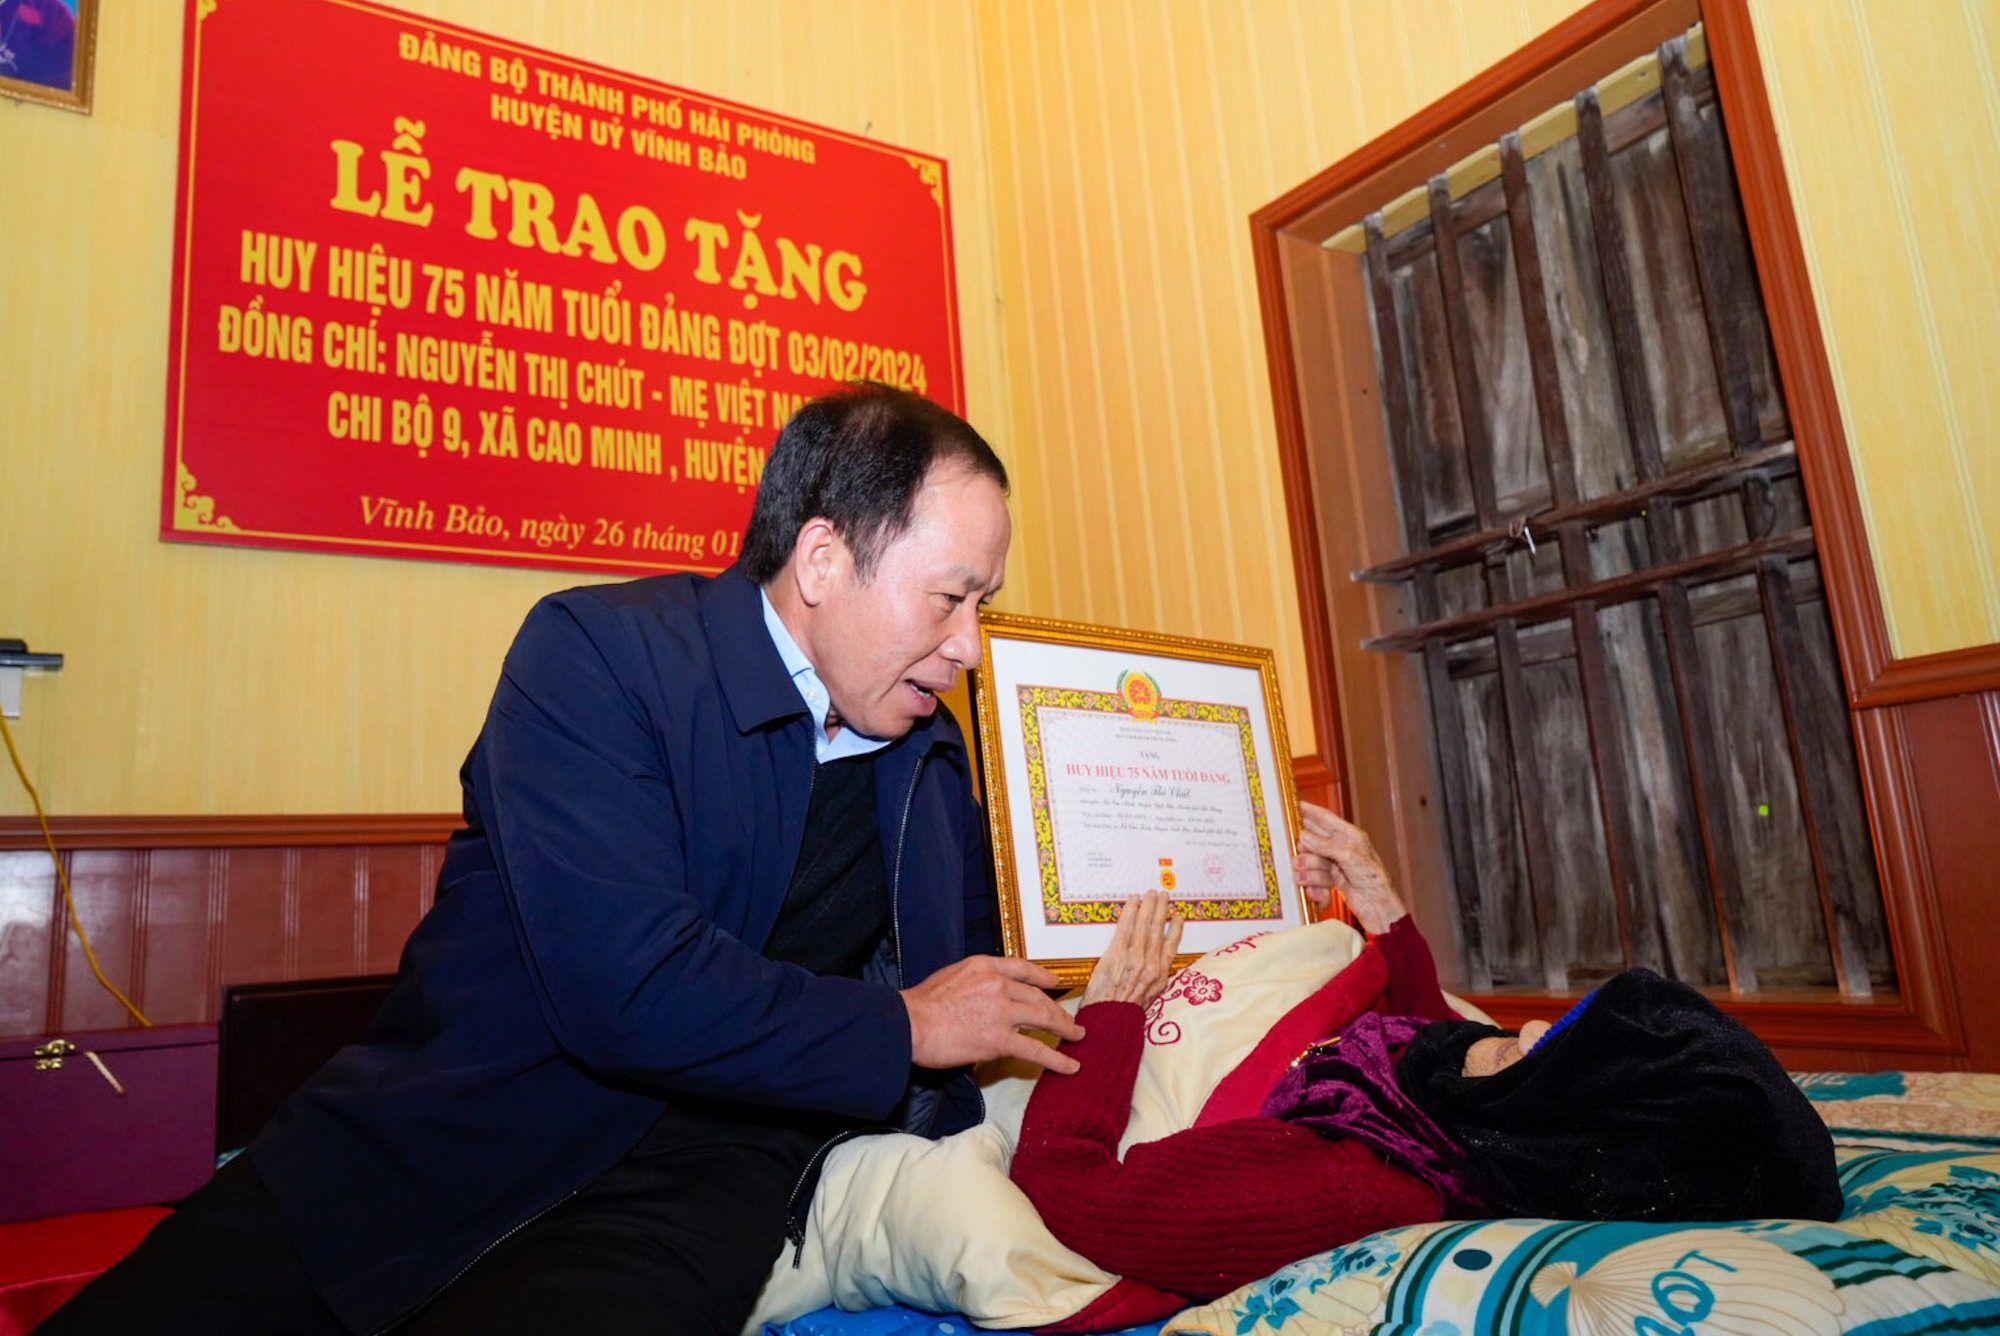 Trao tặng Mẹ Việt Nam anh hùng Nguyễn Thị Chút Huy hiệu 75 năm tuổi Đảng- Ảnh 1.